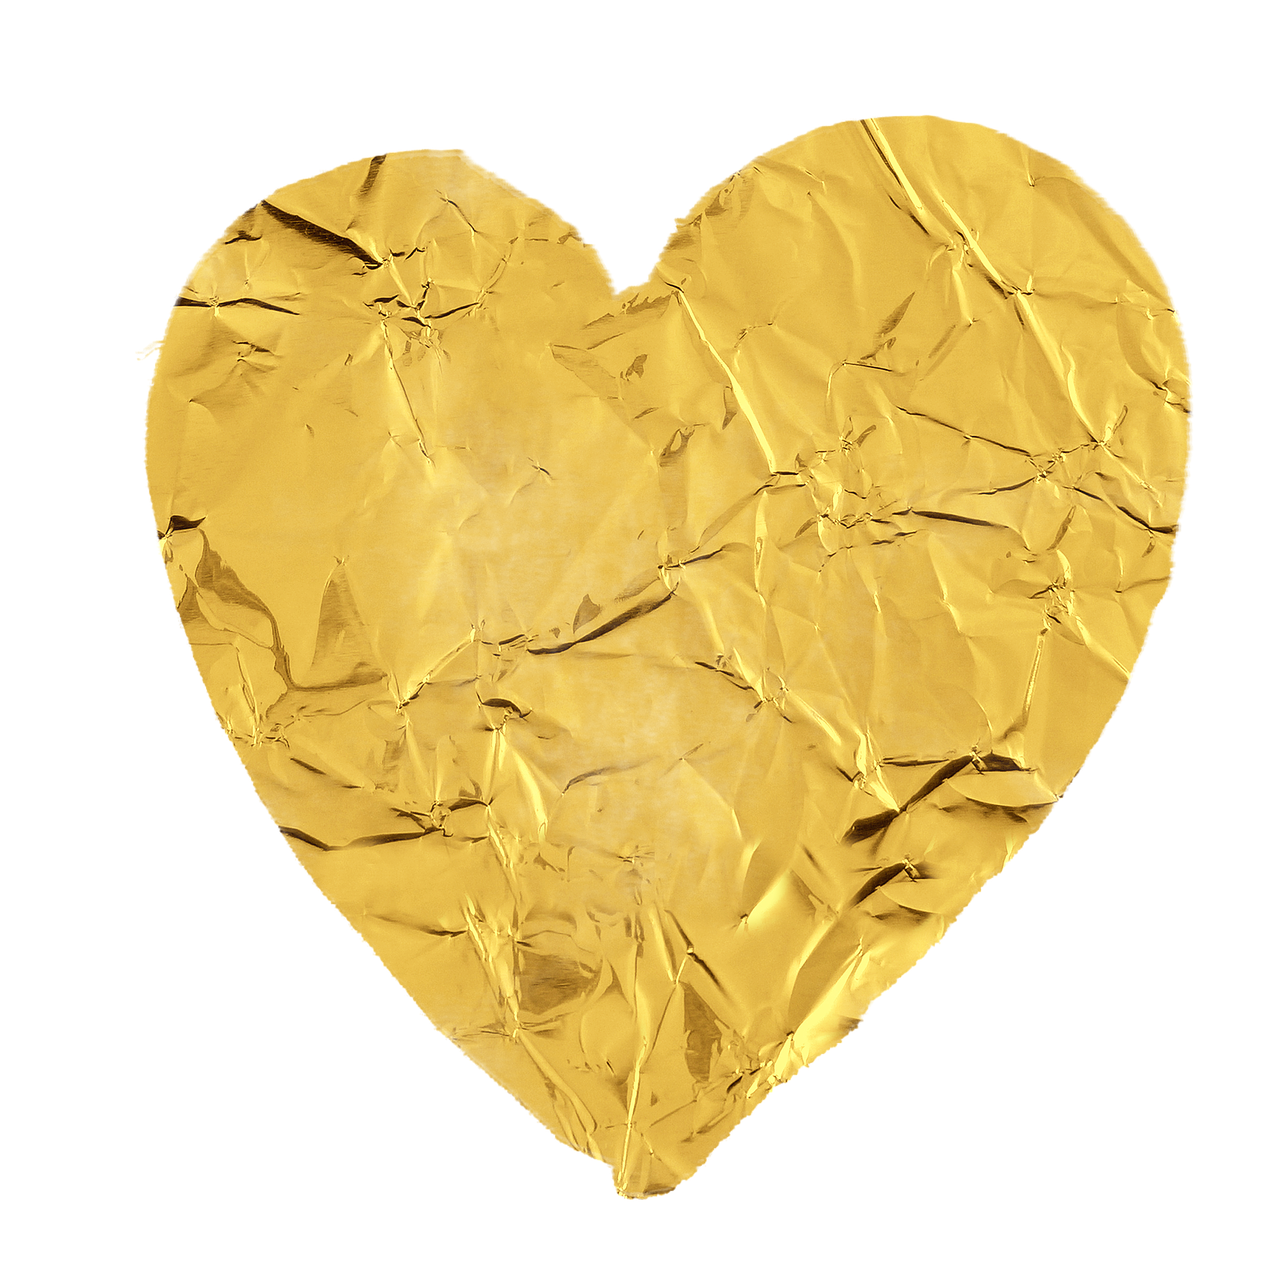 صور قلب ذهبي , اجمل قلب دهبي روعة 👇 عالم ستات